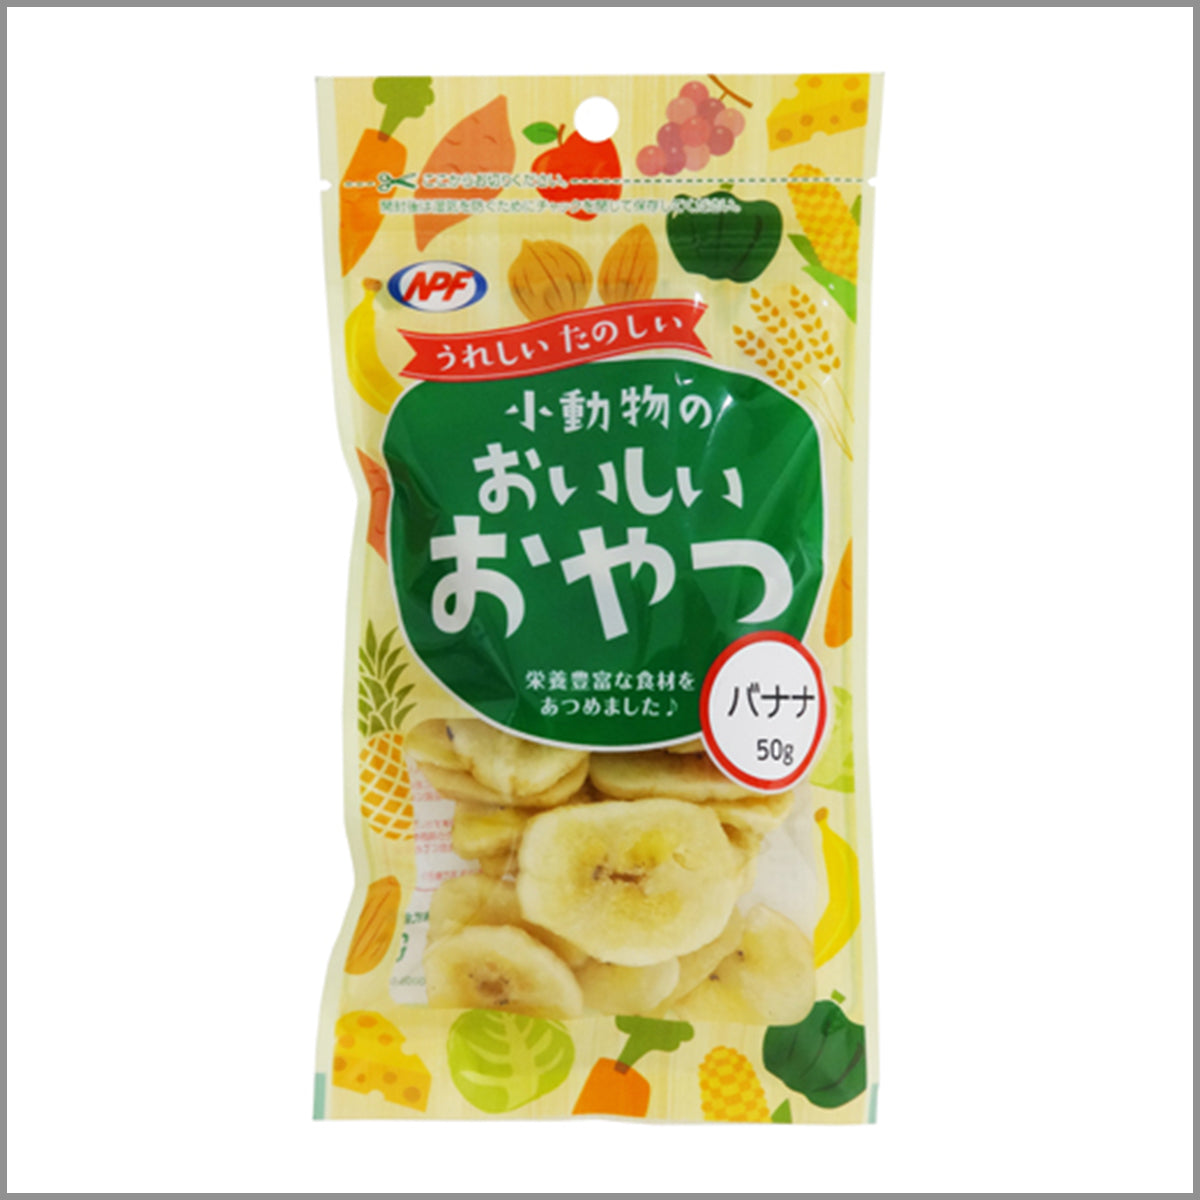 NPF Small animal snack banana_小動物香蕉零食